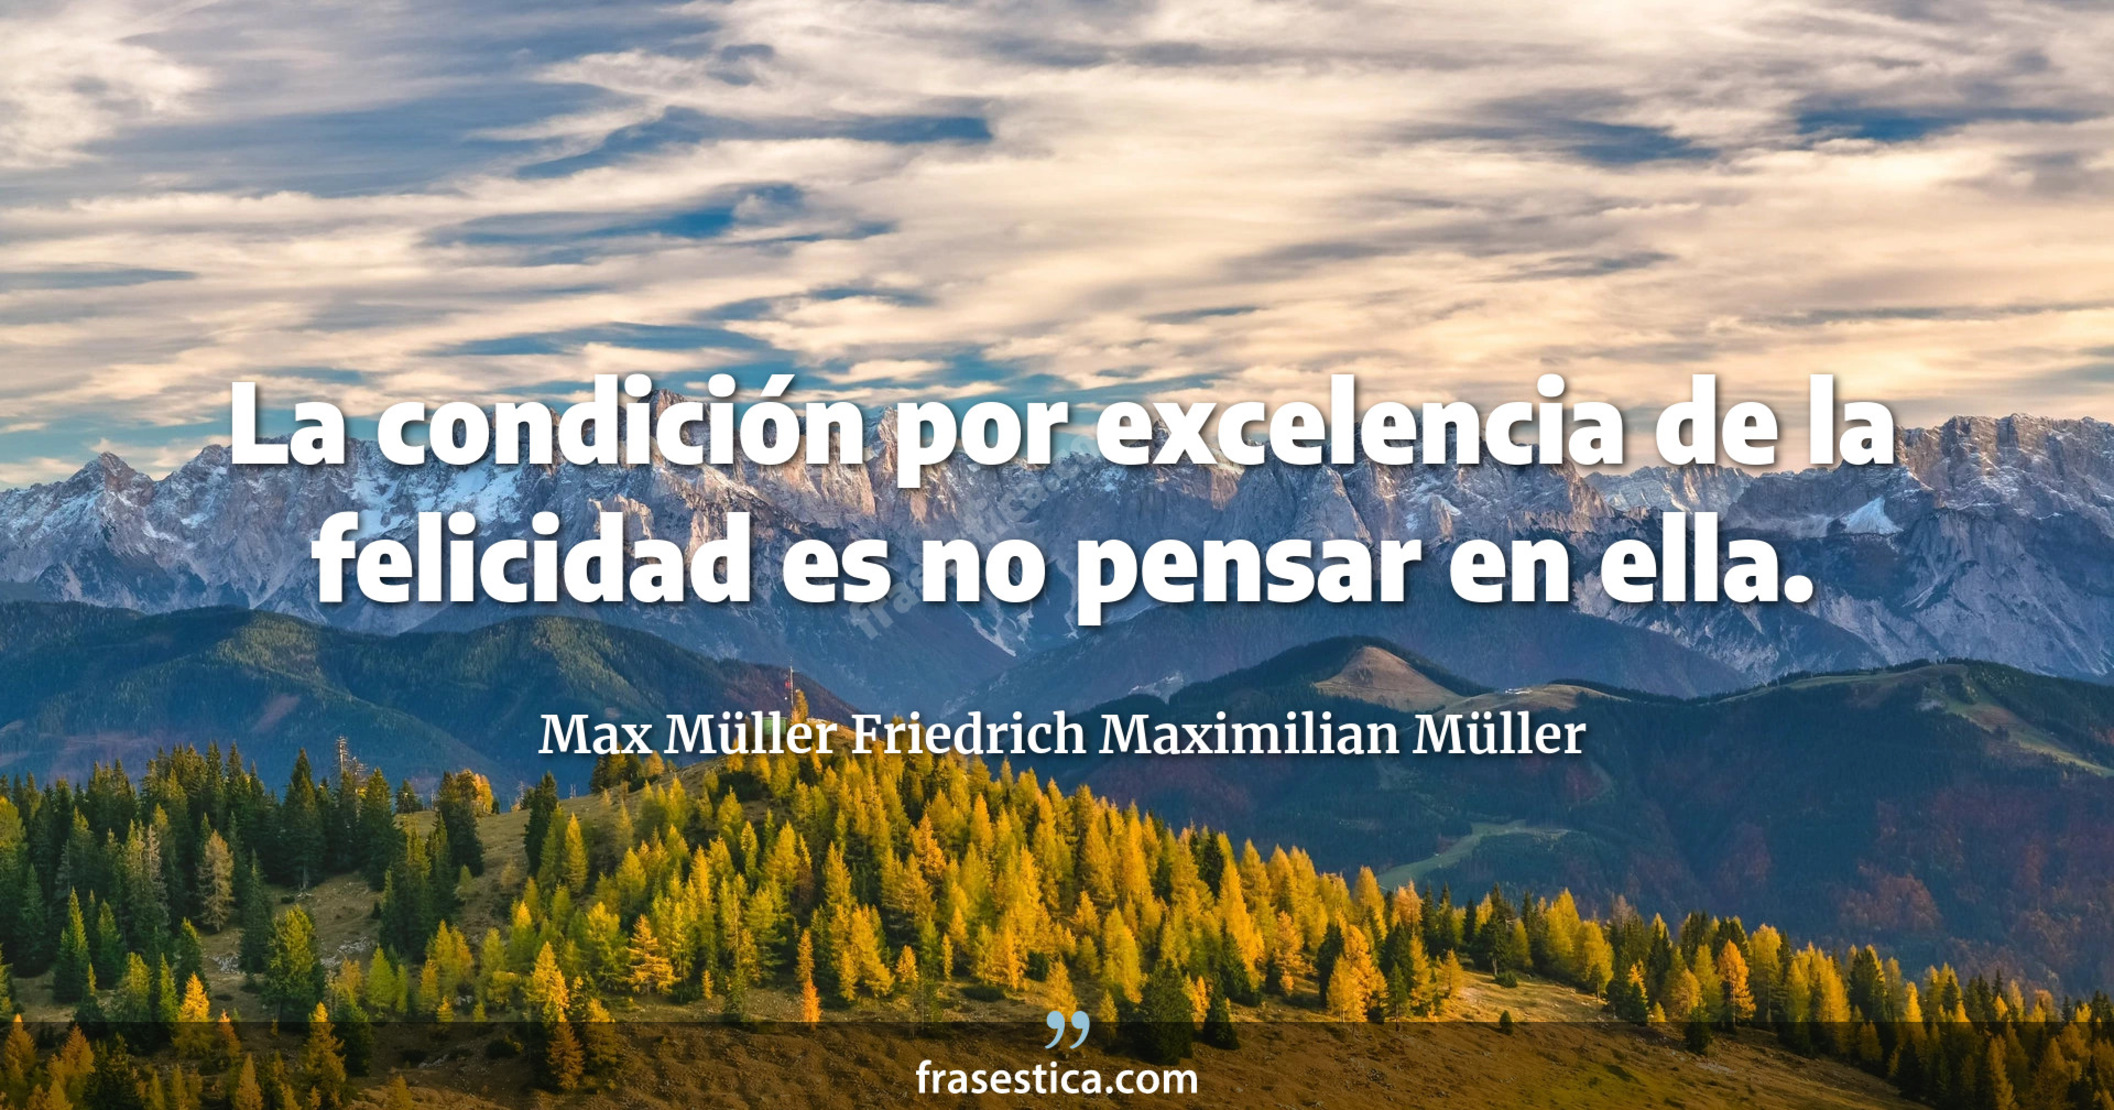 La condición por excelencia de la felicidad es no pensar en ella. - Max Müller Friedrich Maximilian Müller